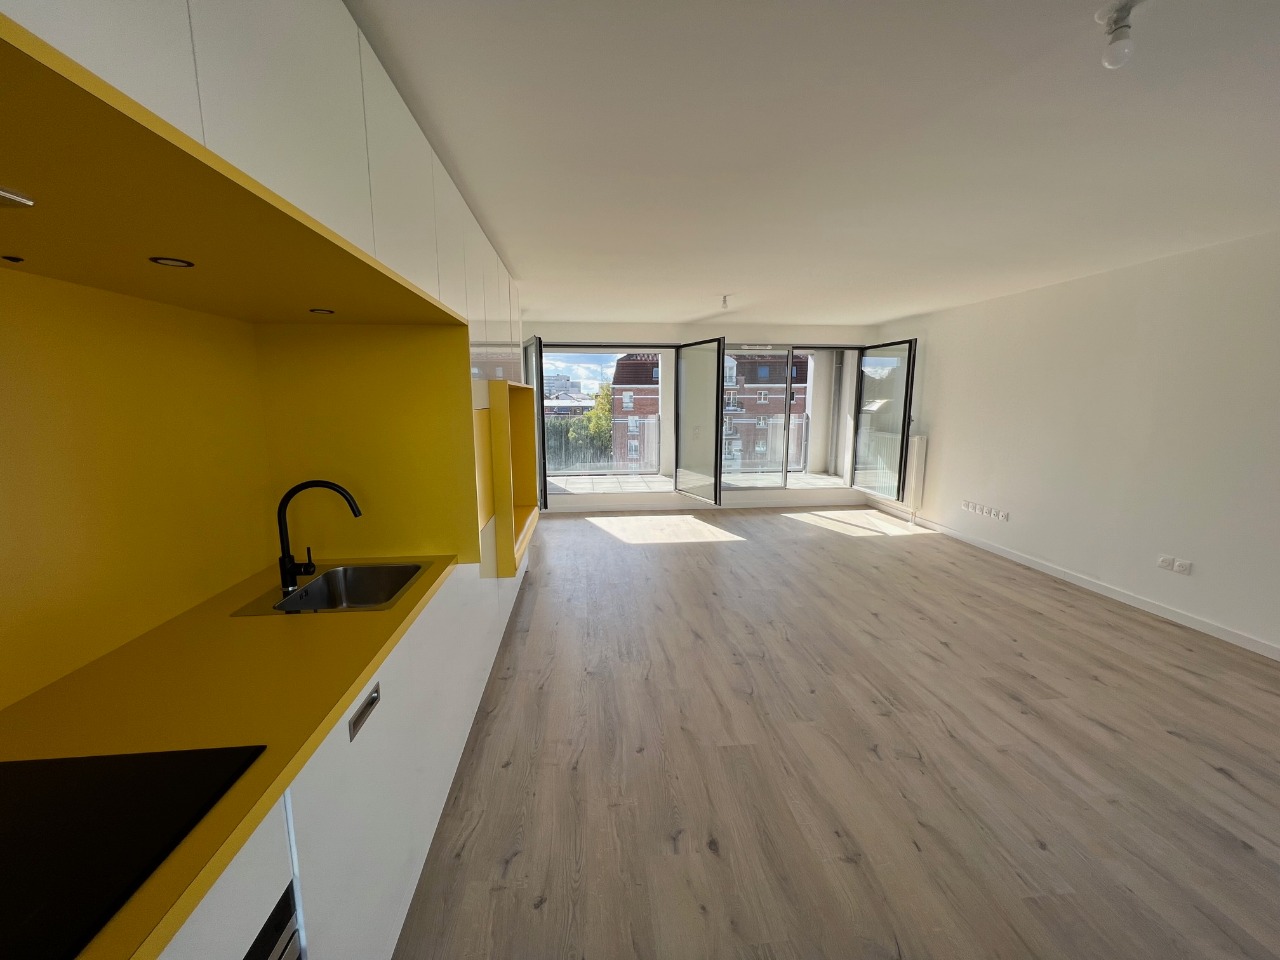 Vente appartement 59000 Lille - Secteur Vauban - T4 avec terrasses